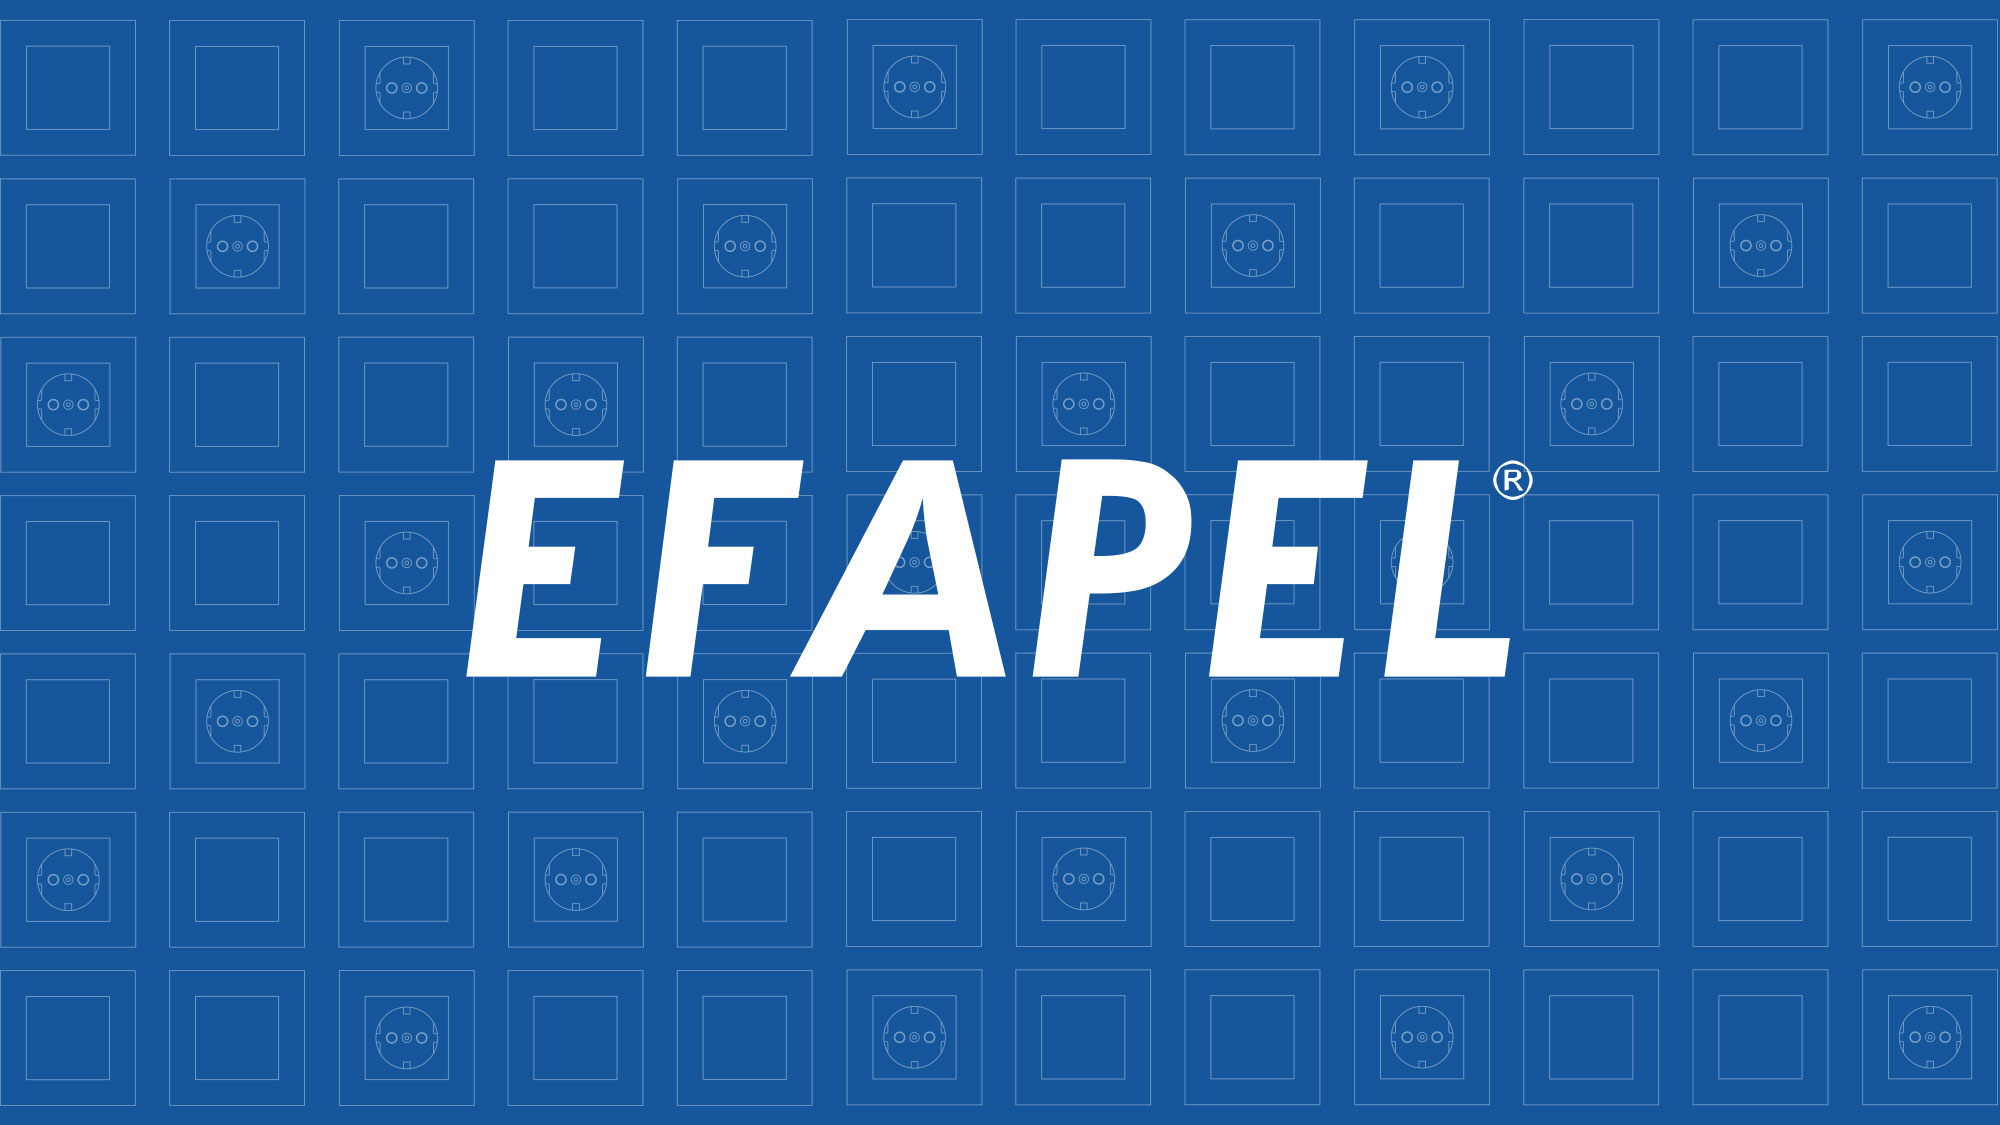 (c) Efapel.com